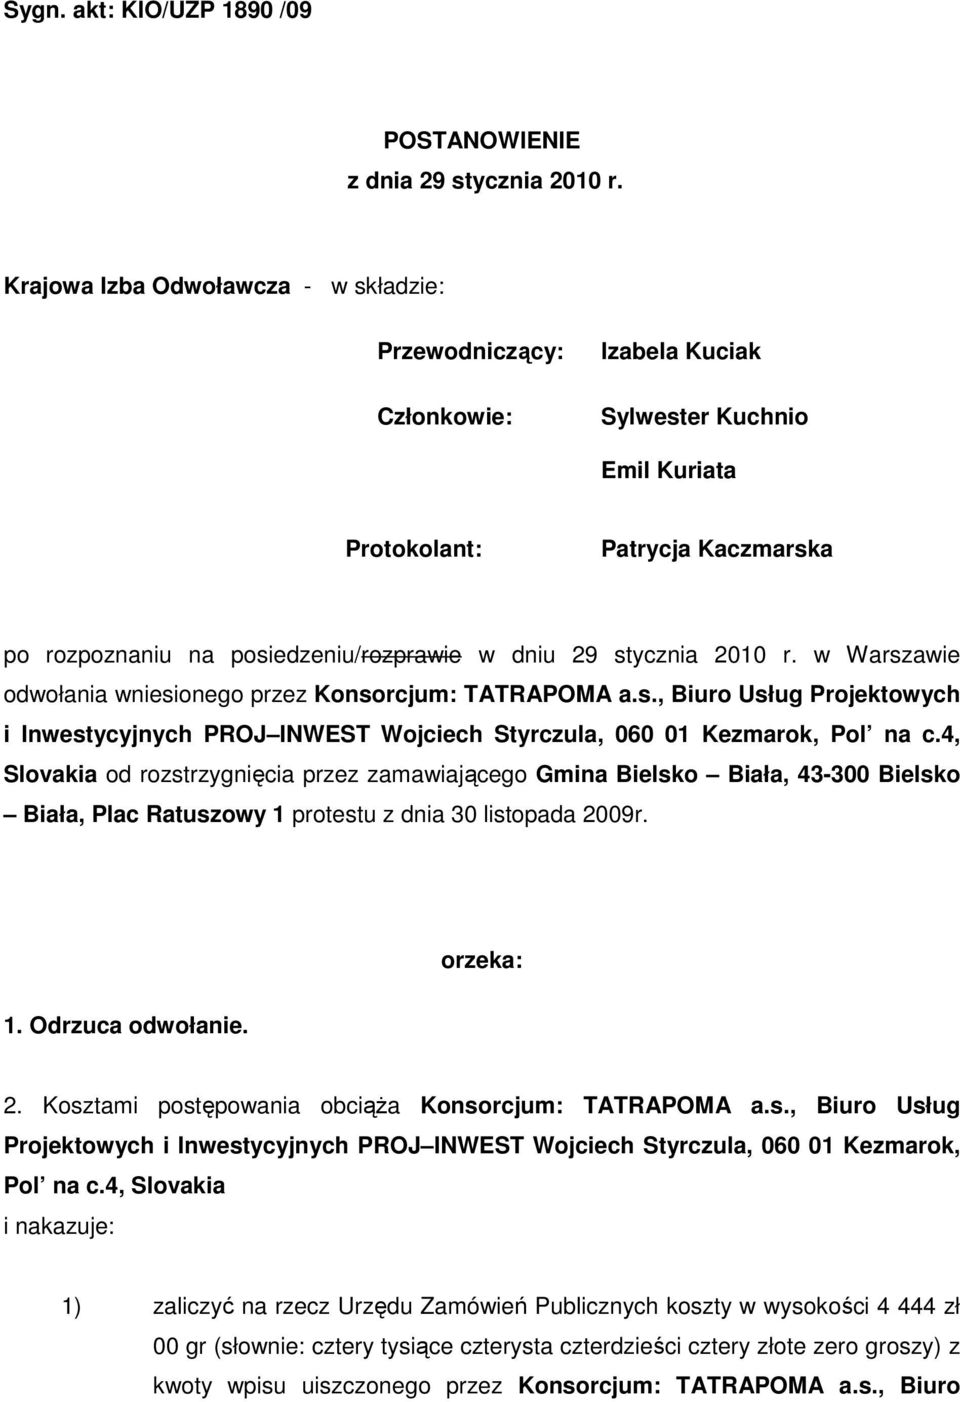 stycznia 2010 r. w Warszawie odwołania wniesionego przez Konsorcjum: TATRAPOMA a.s., Biuro Usług Projektowych i Inwestycyjnych PROJ INWEST Wojciech Styrczula, 060 01 Kezmarok, Pol na c.